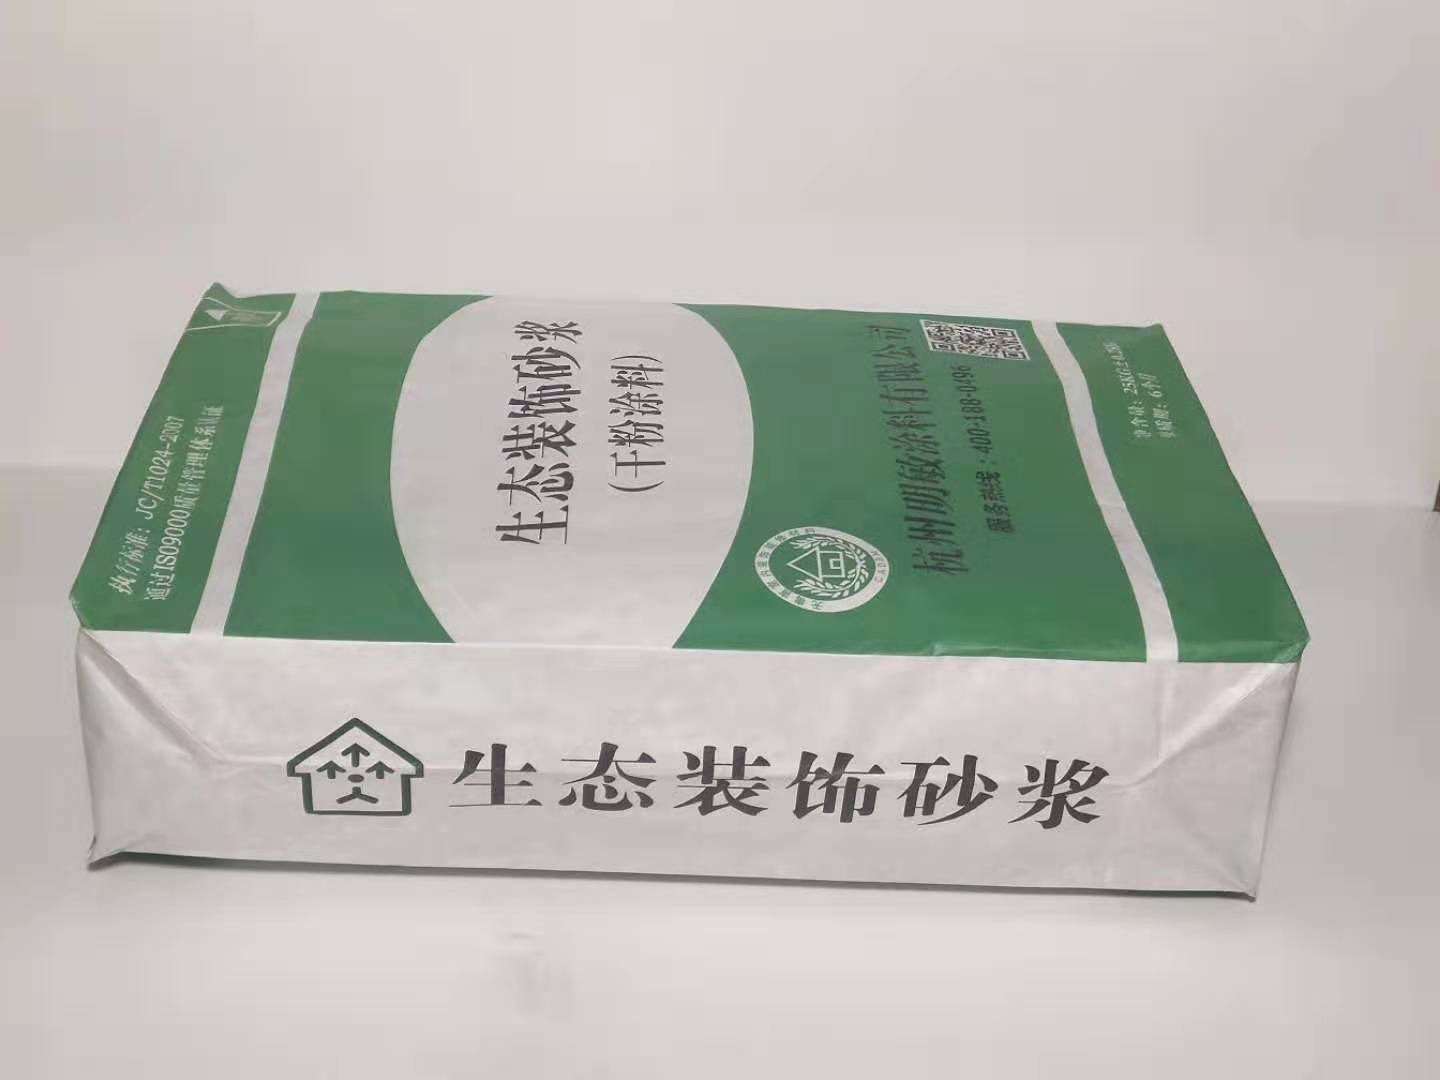 無機飾面砂漿價格_[杭州明敏公司]廠家生產無機飾面砂漿施工價格